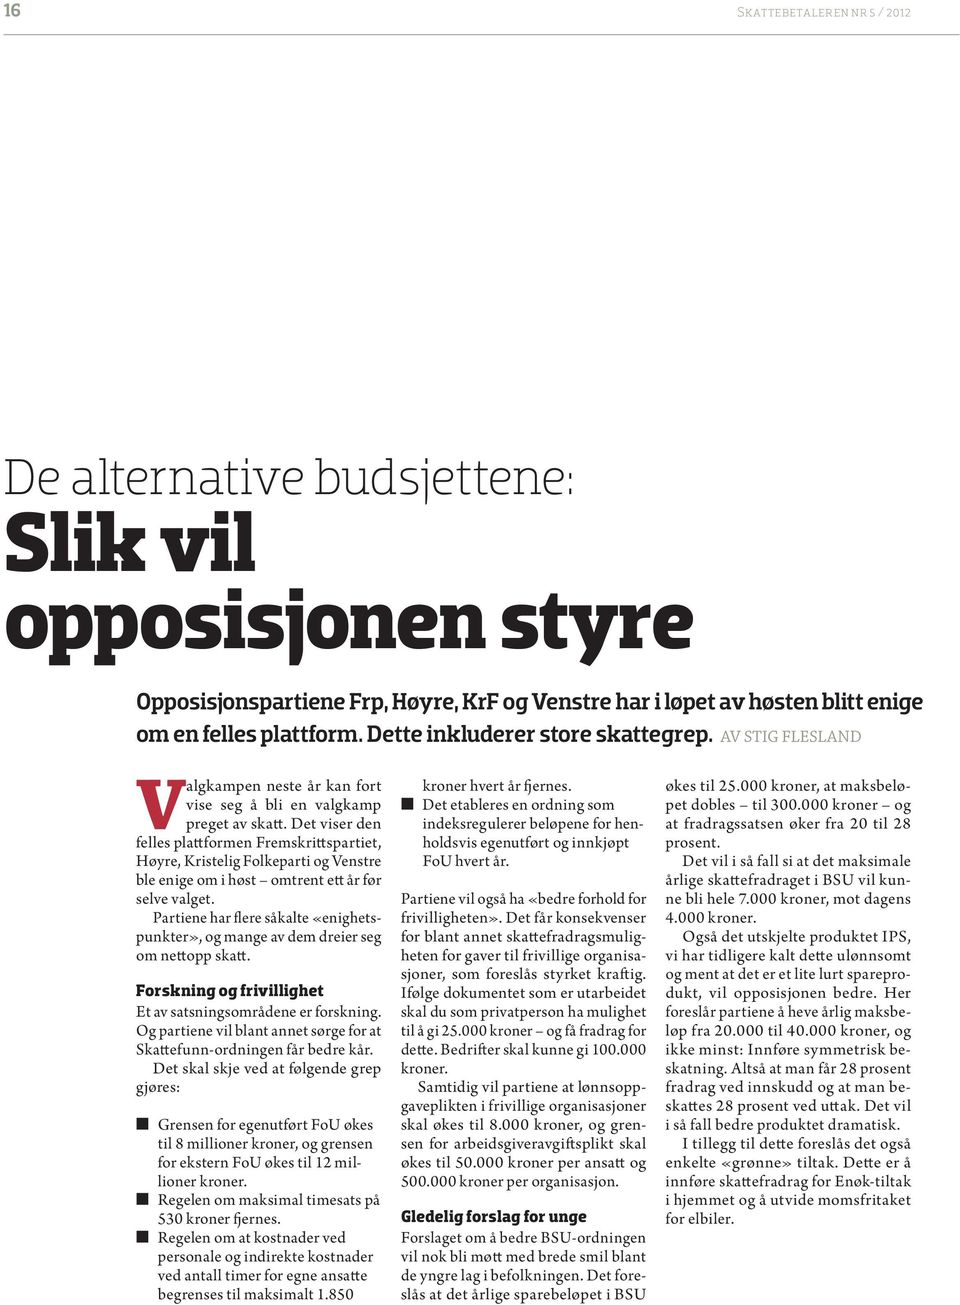 Det viser den felles plattformen Fremskrittspartiet, Høyre, Kristelig Folkeparti og Venstre ble enige om i høst omtrent ett år før selve valget.